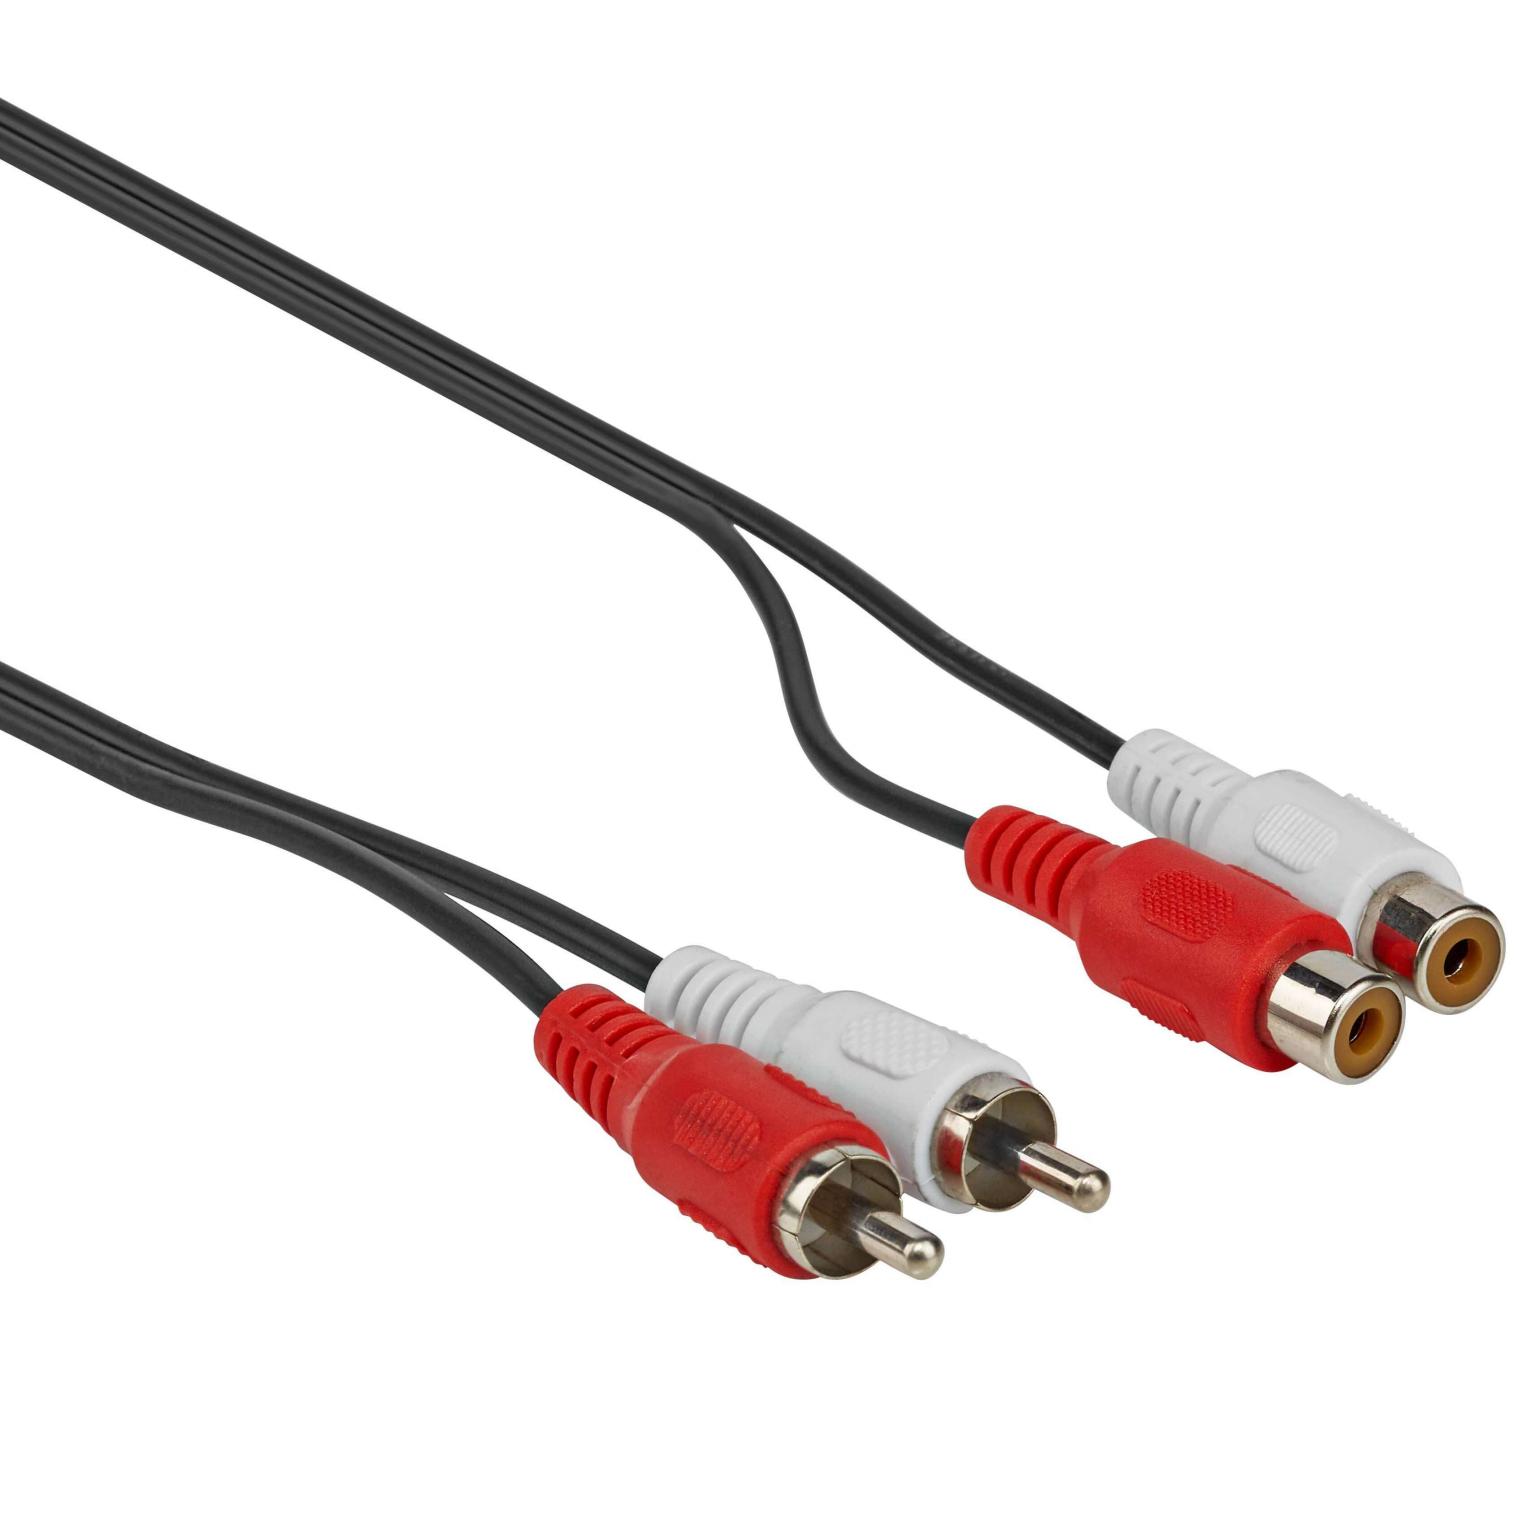 Adaptateur Composite A double RCA mâle vers USB mâle, câble d'extension de  données Audio et vidéo